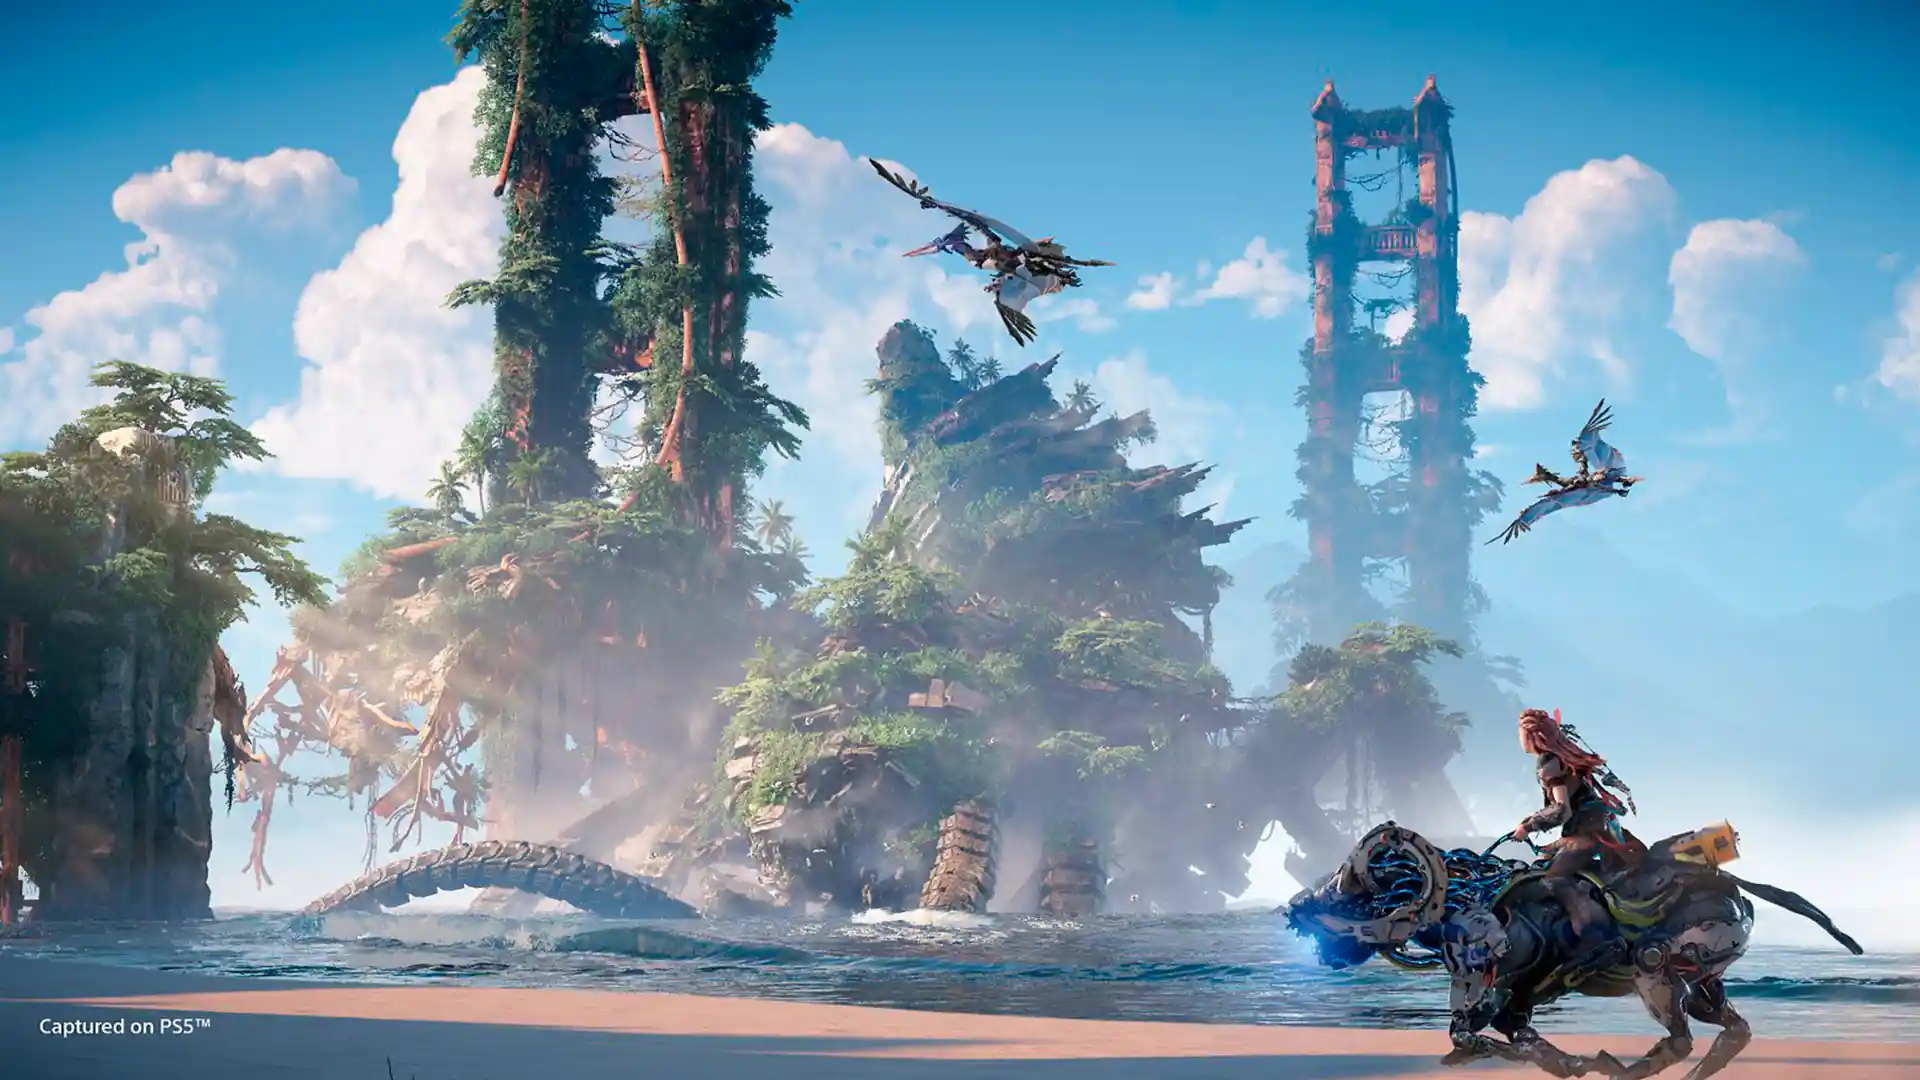 Horizon Forbidden West está a caminho do PC, revela documento vazado da Sony